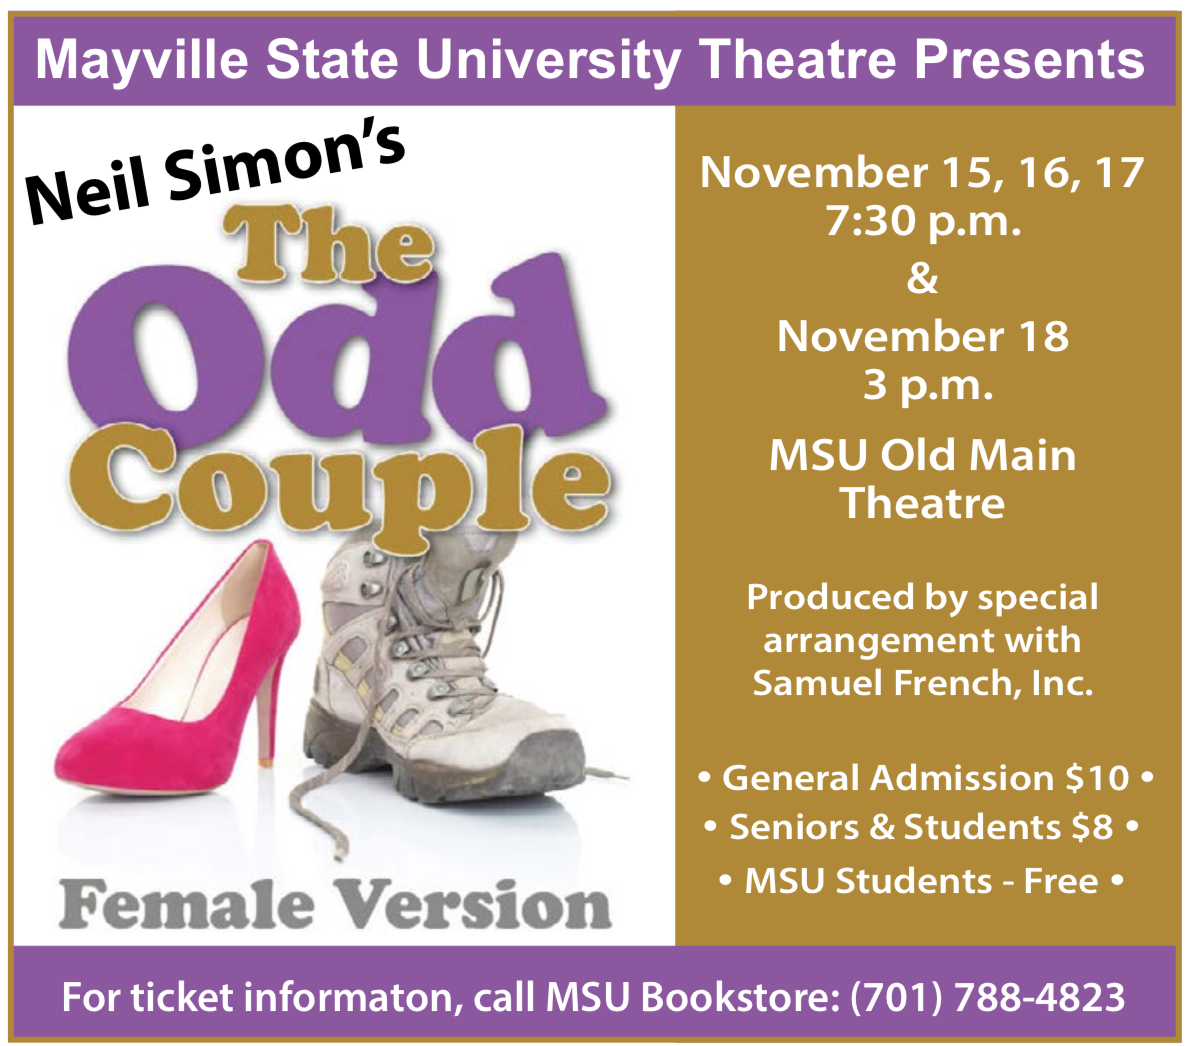 MSU Theatre Presents "The Odd Couple" @ MSU Theatre - Old Main